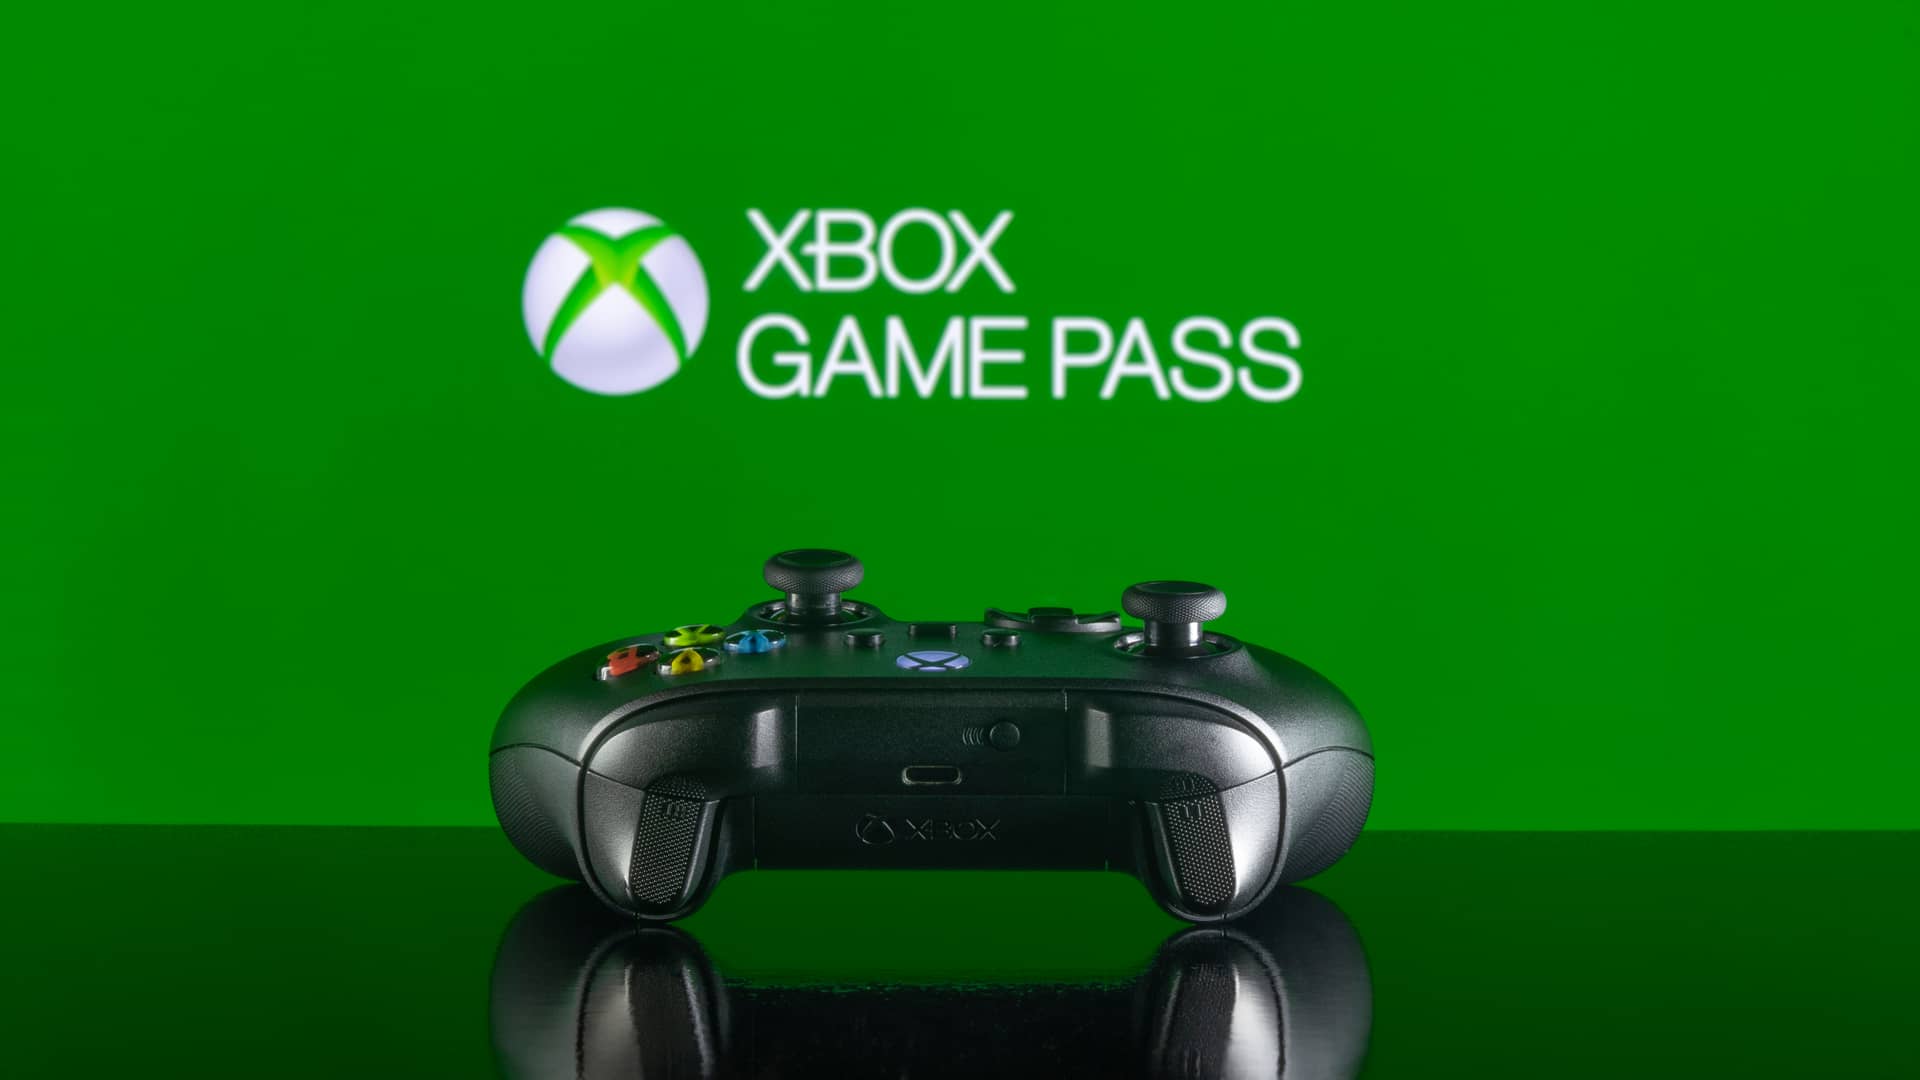 Logotipo del Game Pass en una televisión con un mando para hacer referencia a la diferencia del game pass y el game pass ultimate